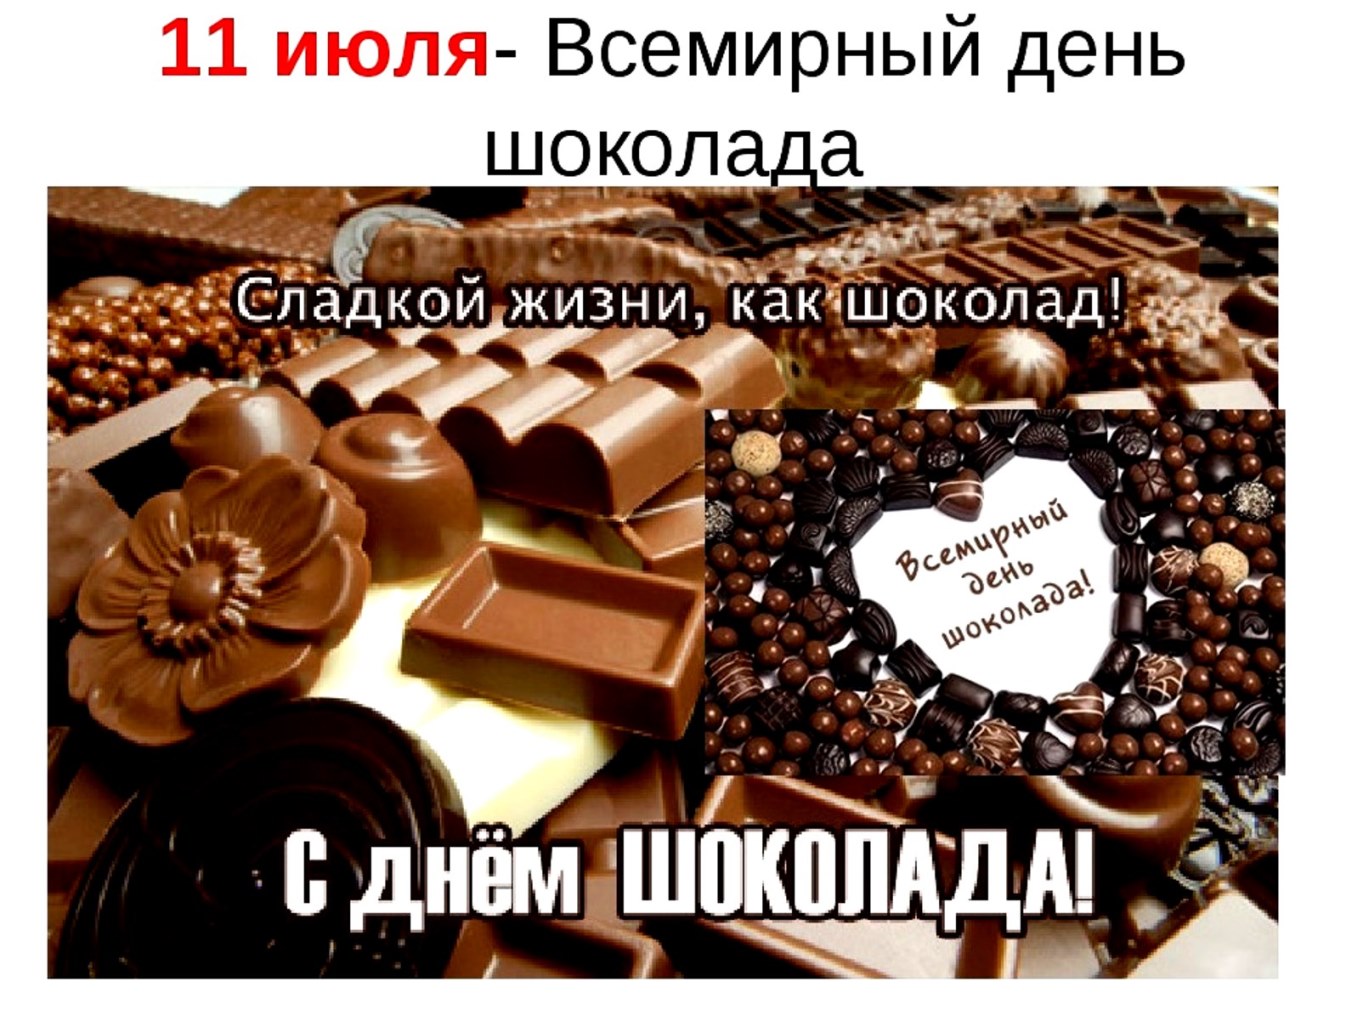 Шоколад 11. Всемирный день шоколада. Всемирный день шоколада 11 июля. С днем шоколада поздравления. 11 Июля день шоколада.